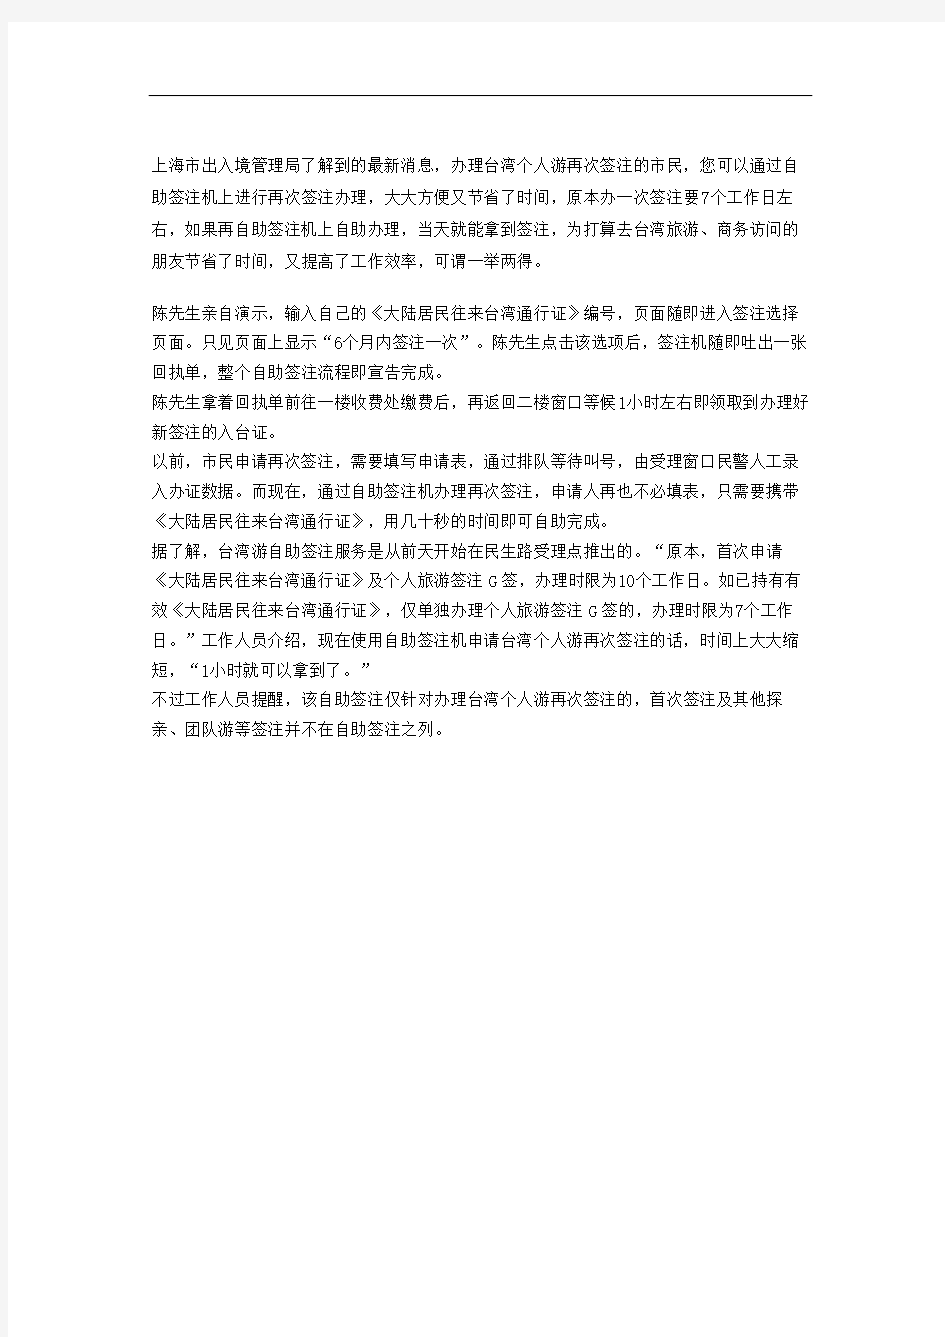 台湾自由行再次签注可自助办理签注业务